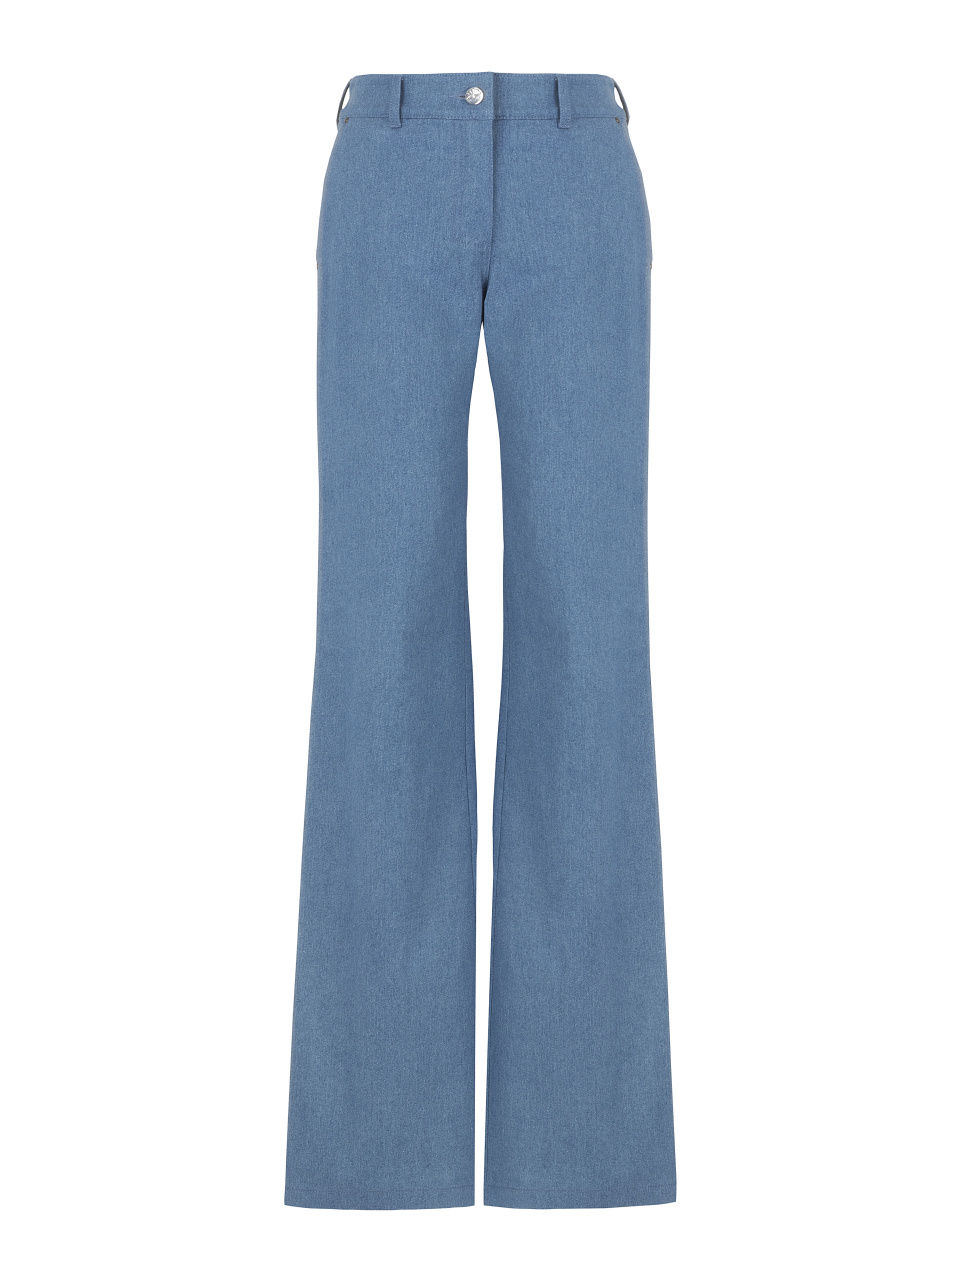 Синие джинсы-клеш с вышивкой на карманах, 1